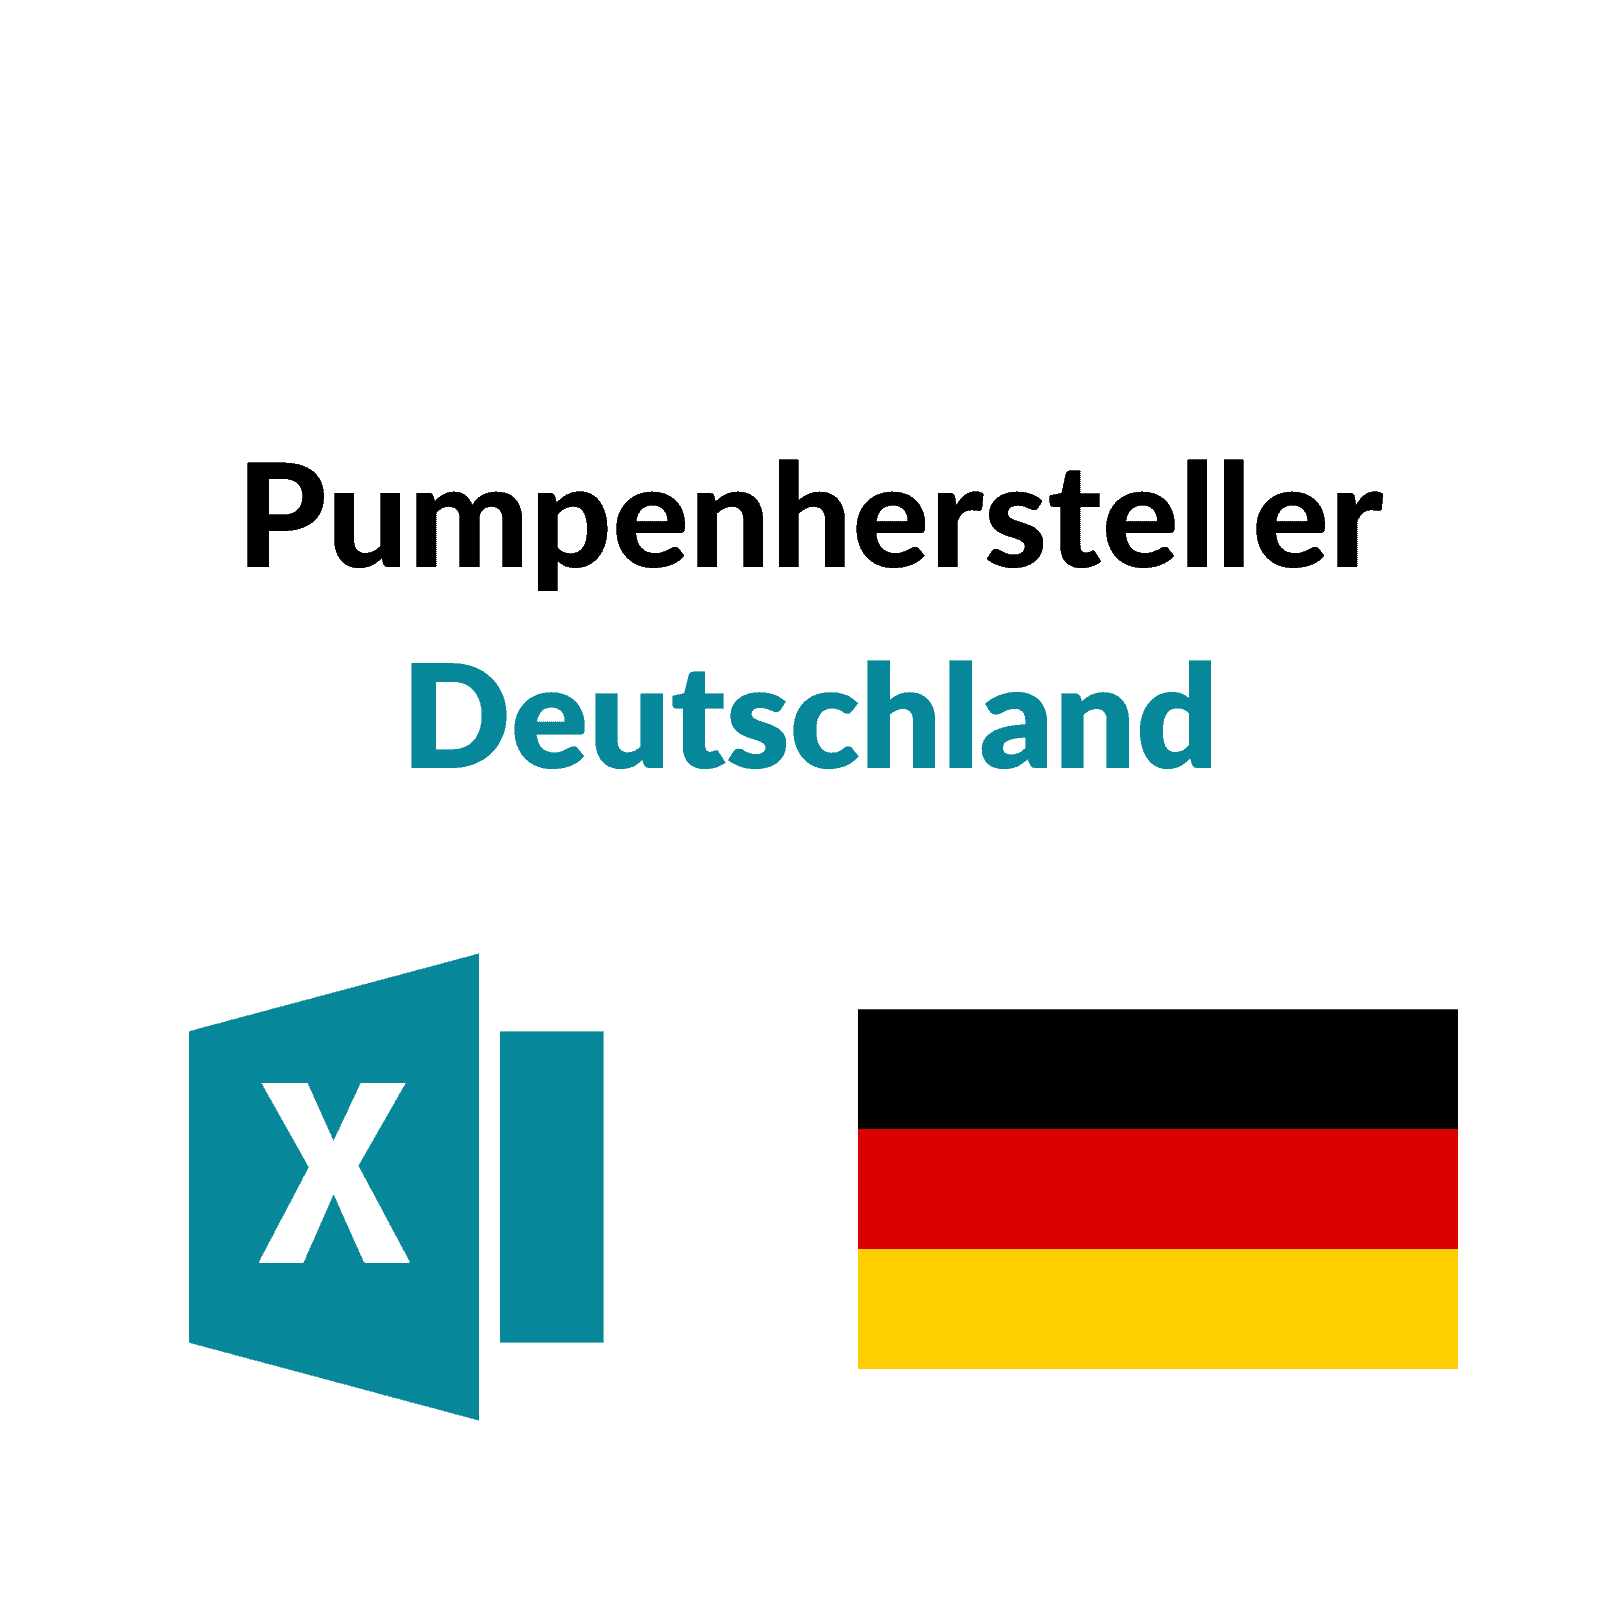 Pumpenhersteller Deutschland